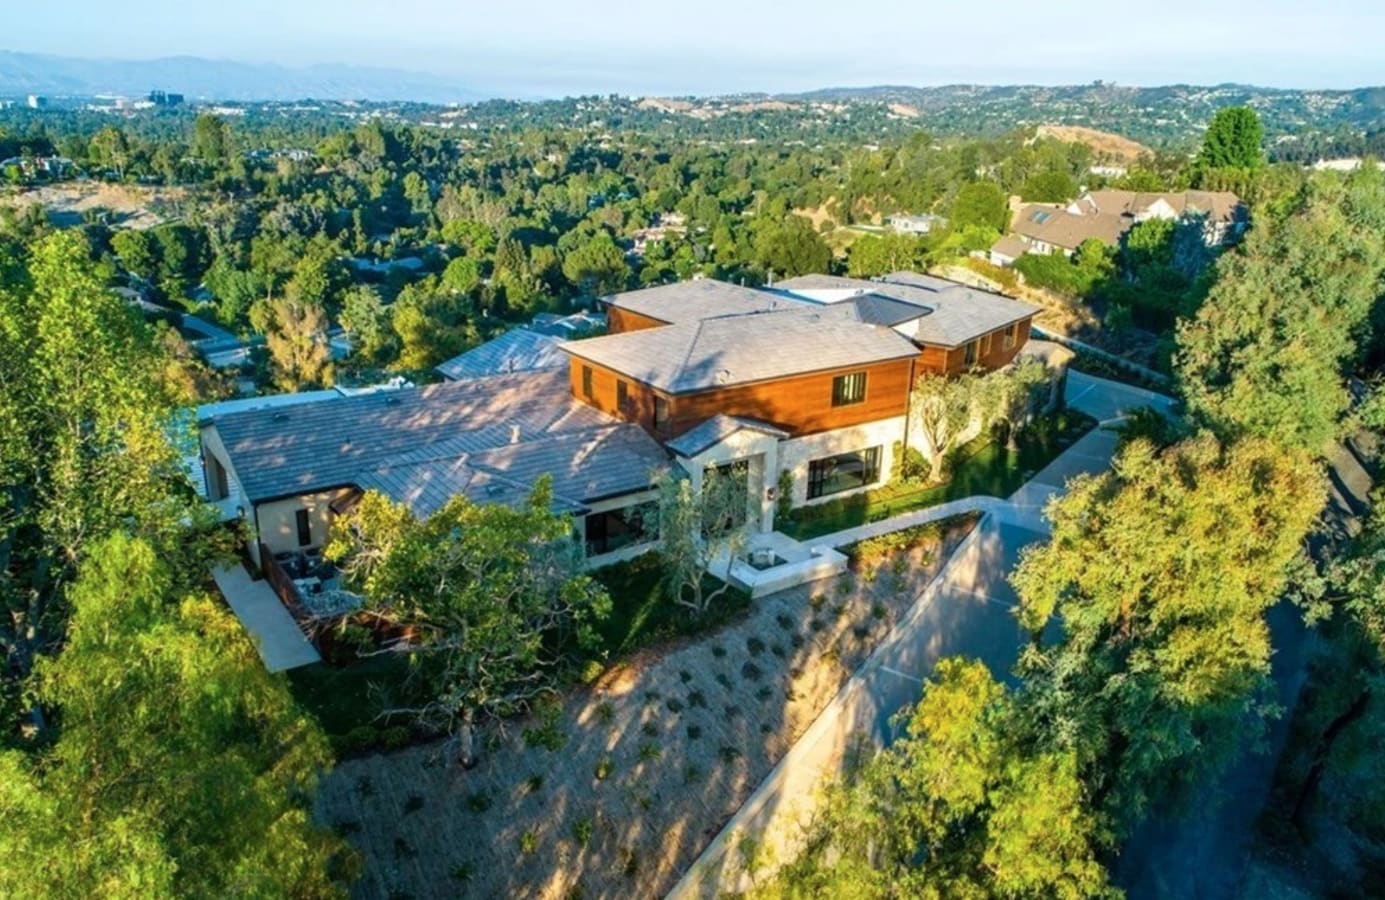 La nueva casa de Will Smith y Jada Pinkett. Will Smith y Jada Pinkett han decidido ampliar su cartera de propiedades con una nueva mansión en la prestigiosa Hidden Hills, una comunidad privada en la compartirán vecindario con estrellas como Kaley Cuoco, Kylie Jenner y Drake, entre otros.